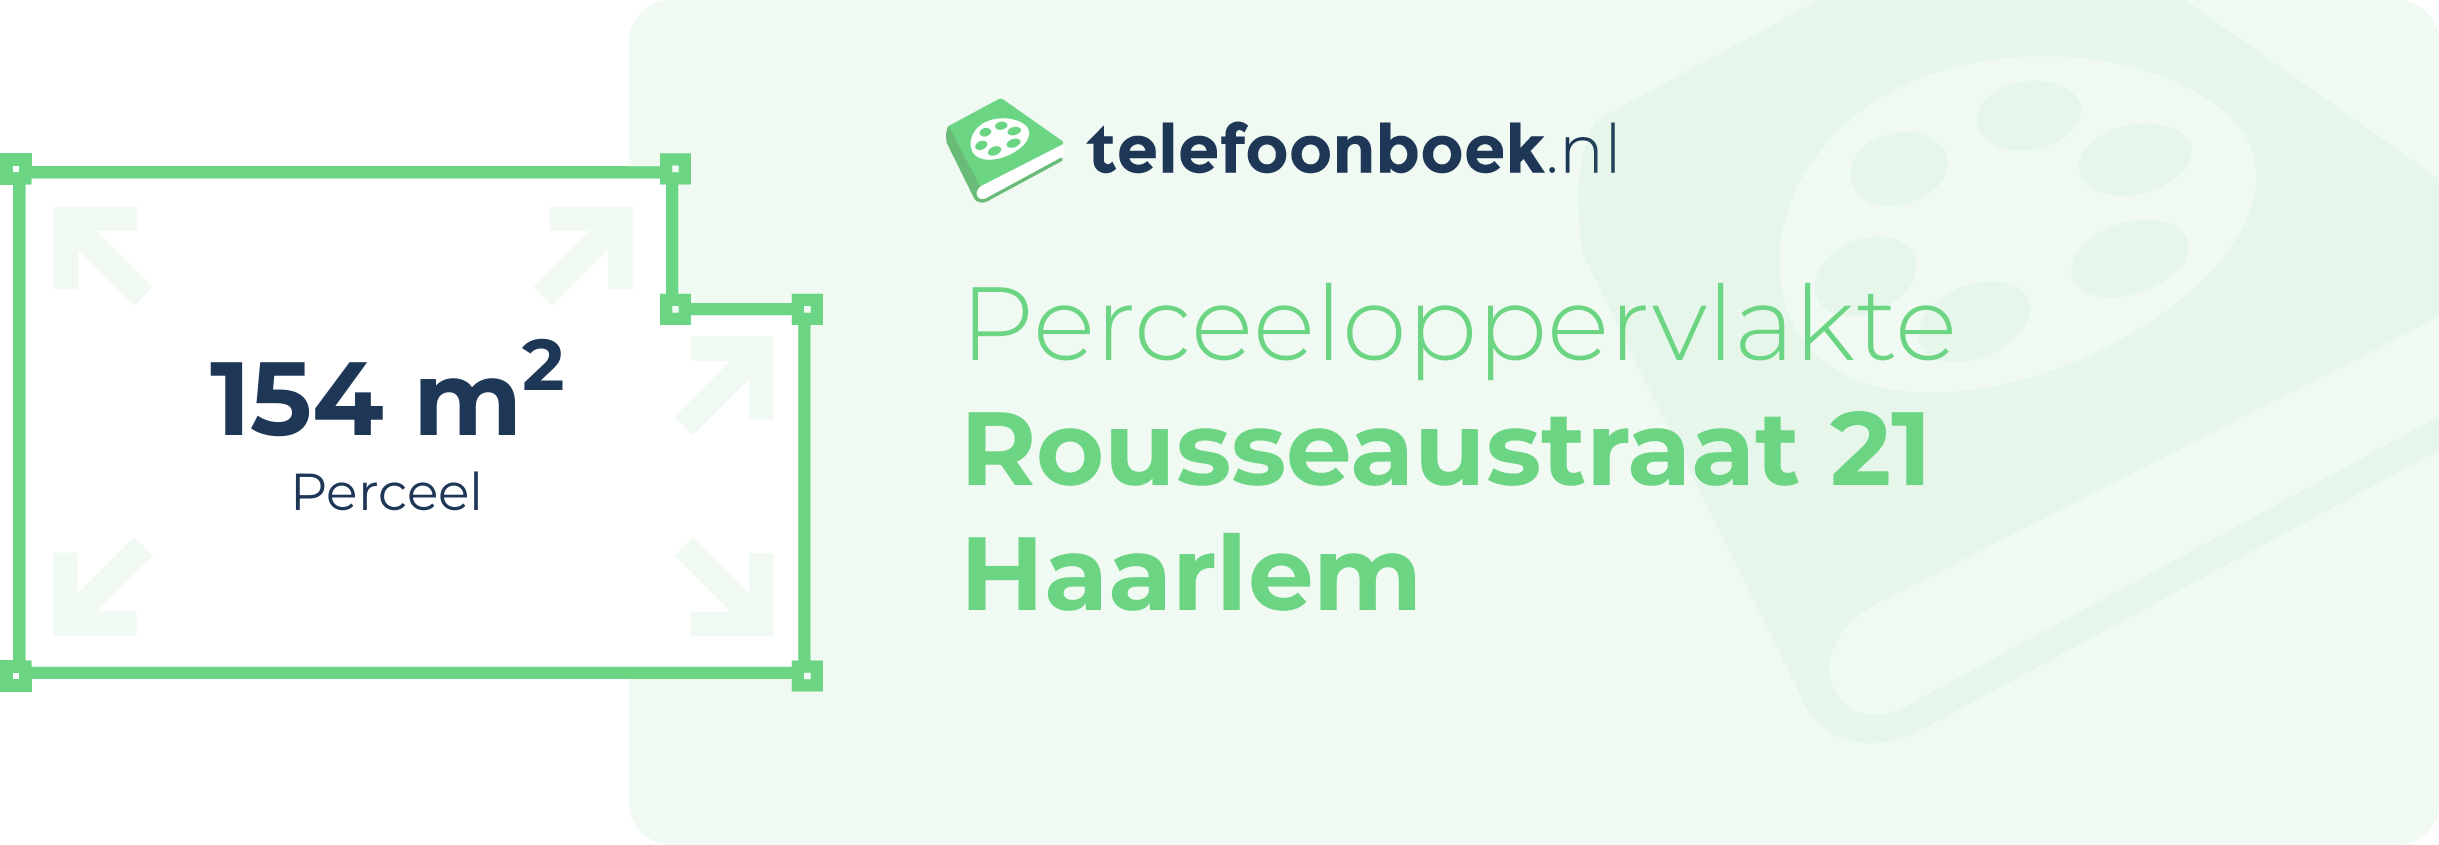 Perceeloppervlakte Rousseaustraat 21 Haarlem